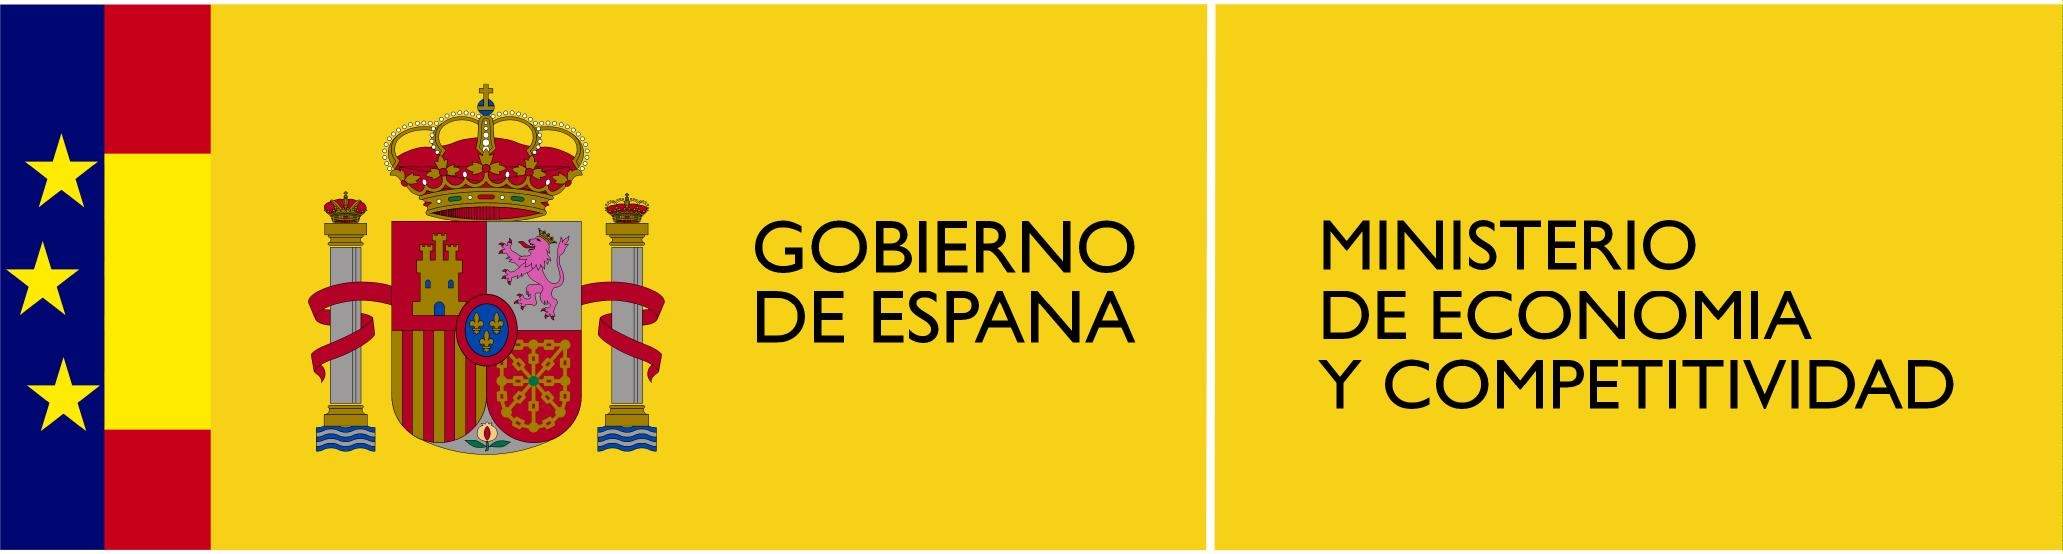 Gobierno De Espana/Ministry De Economia y Competitividad